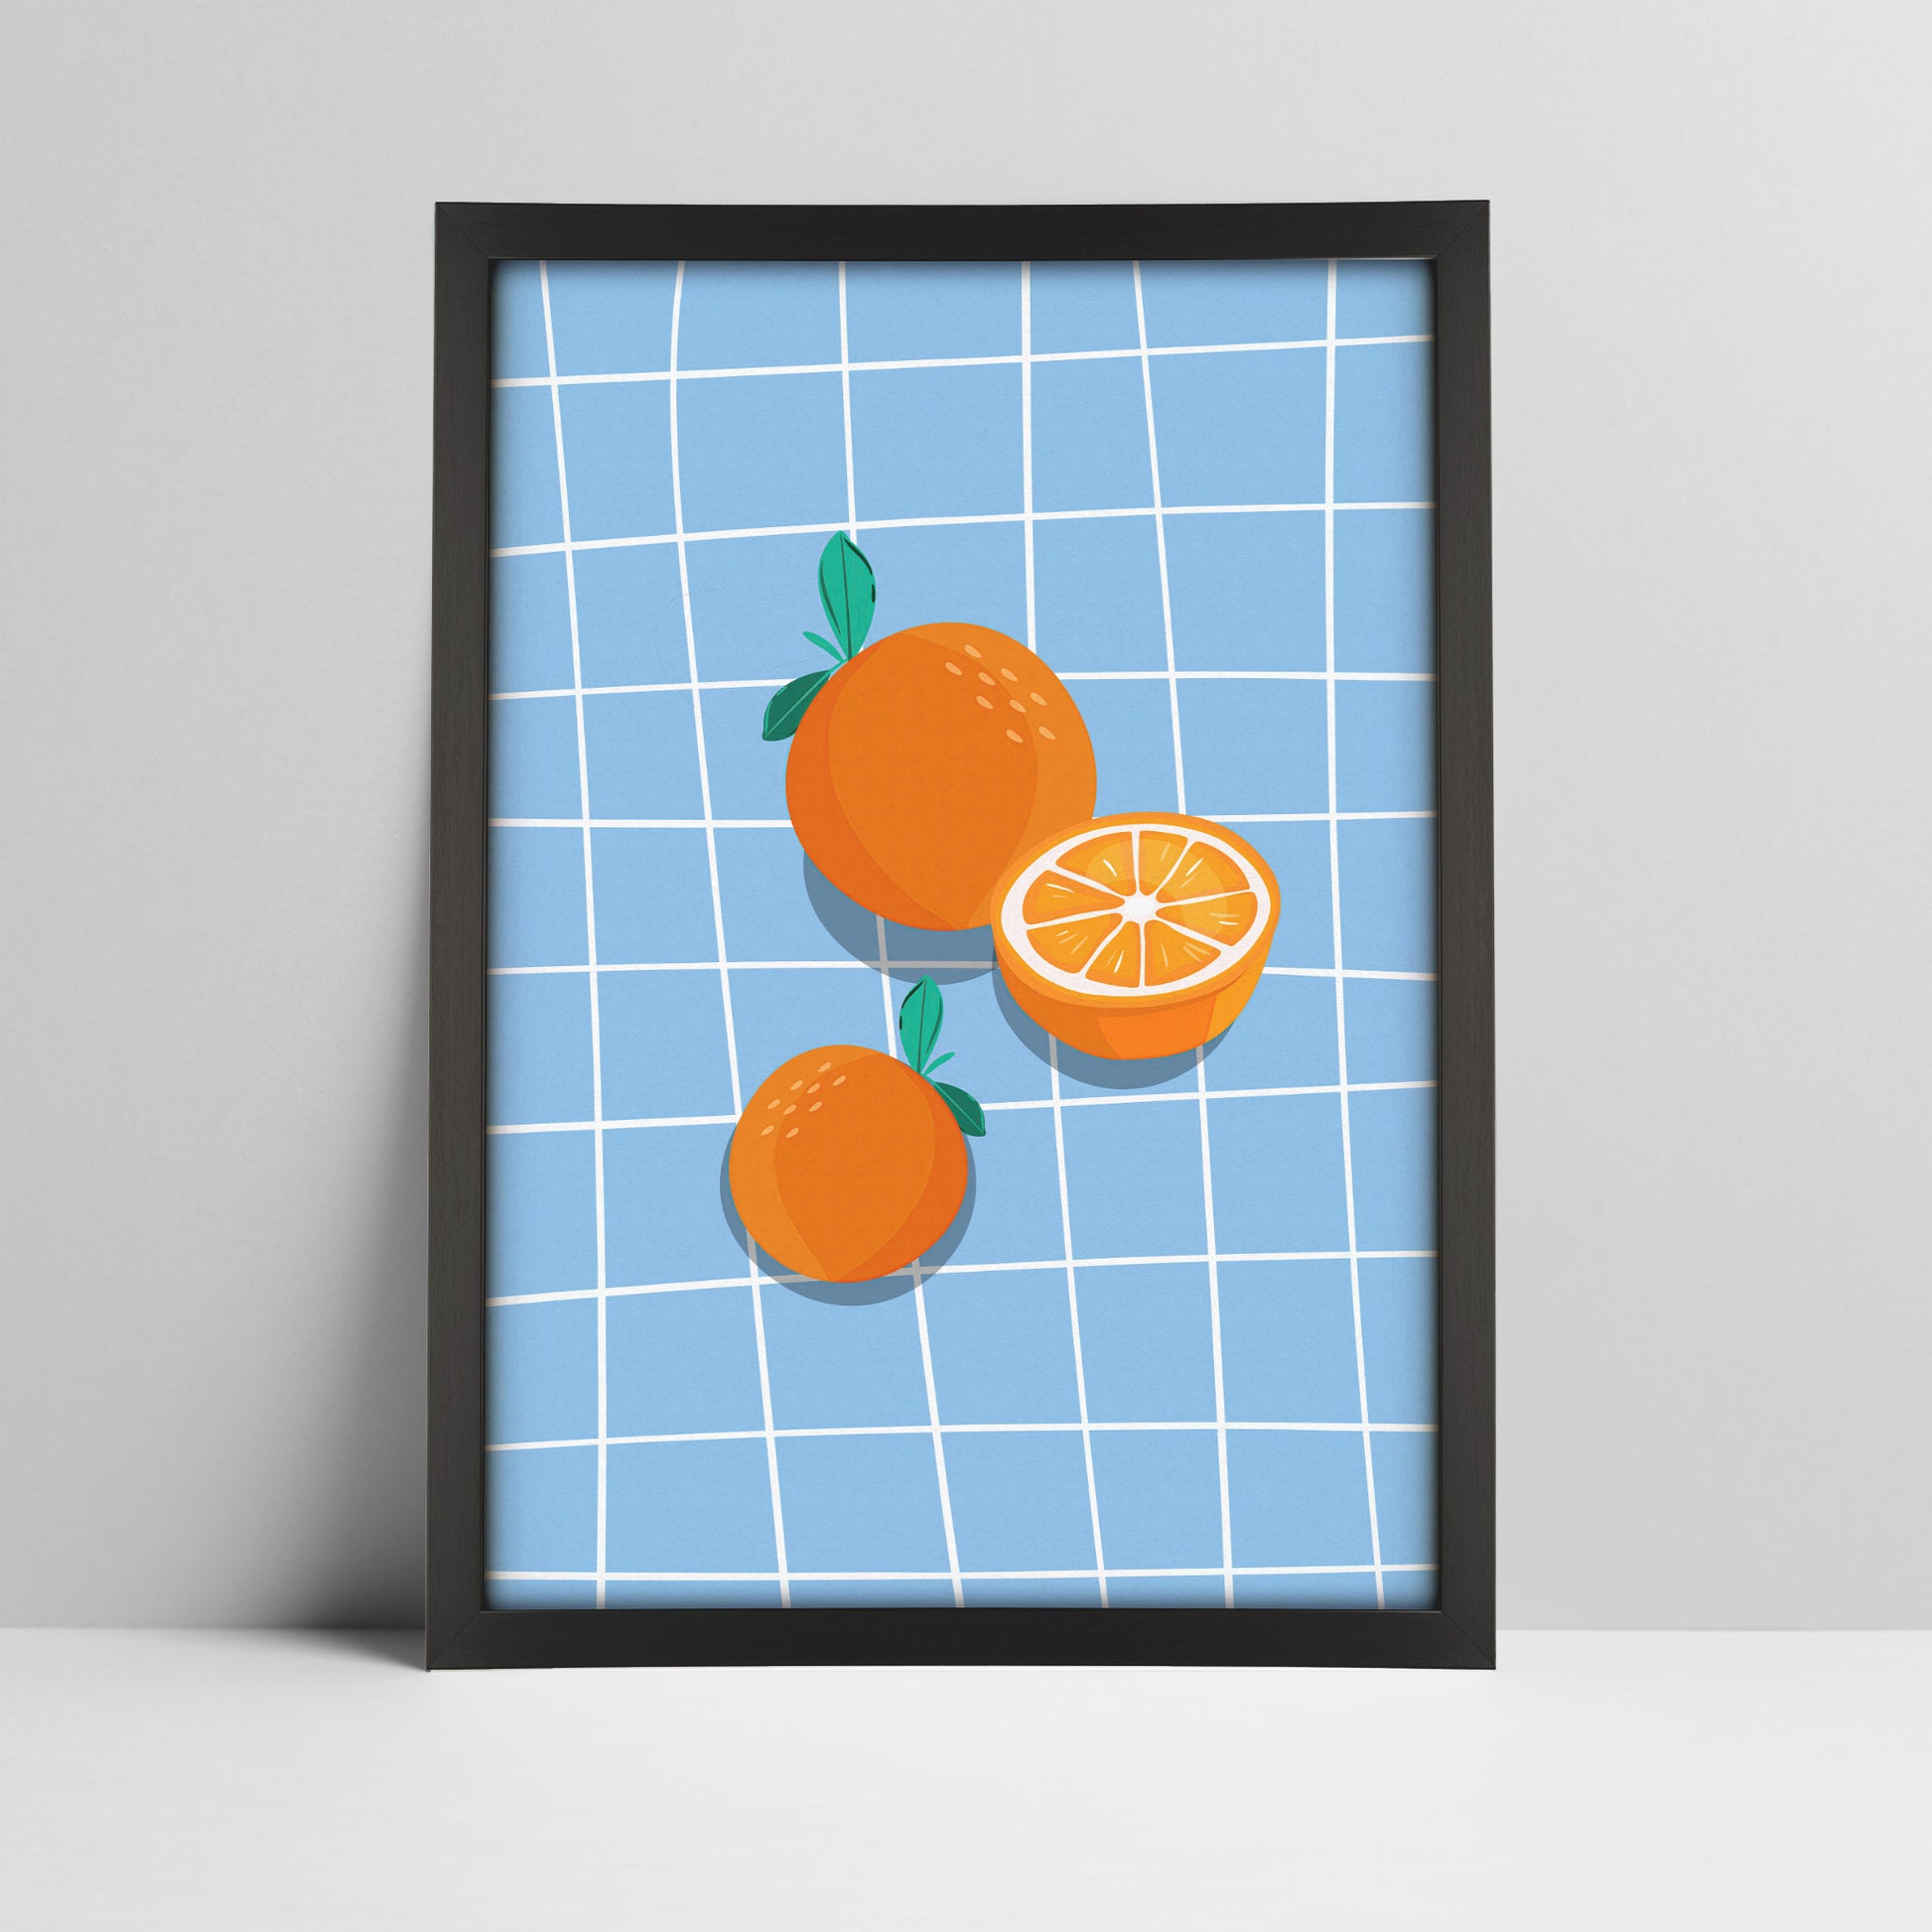 Art print of oranges on blue grid background illustration in a black frame